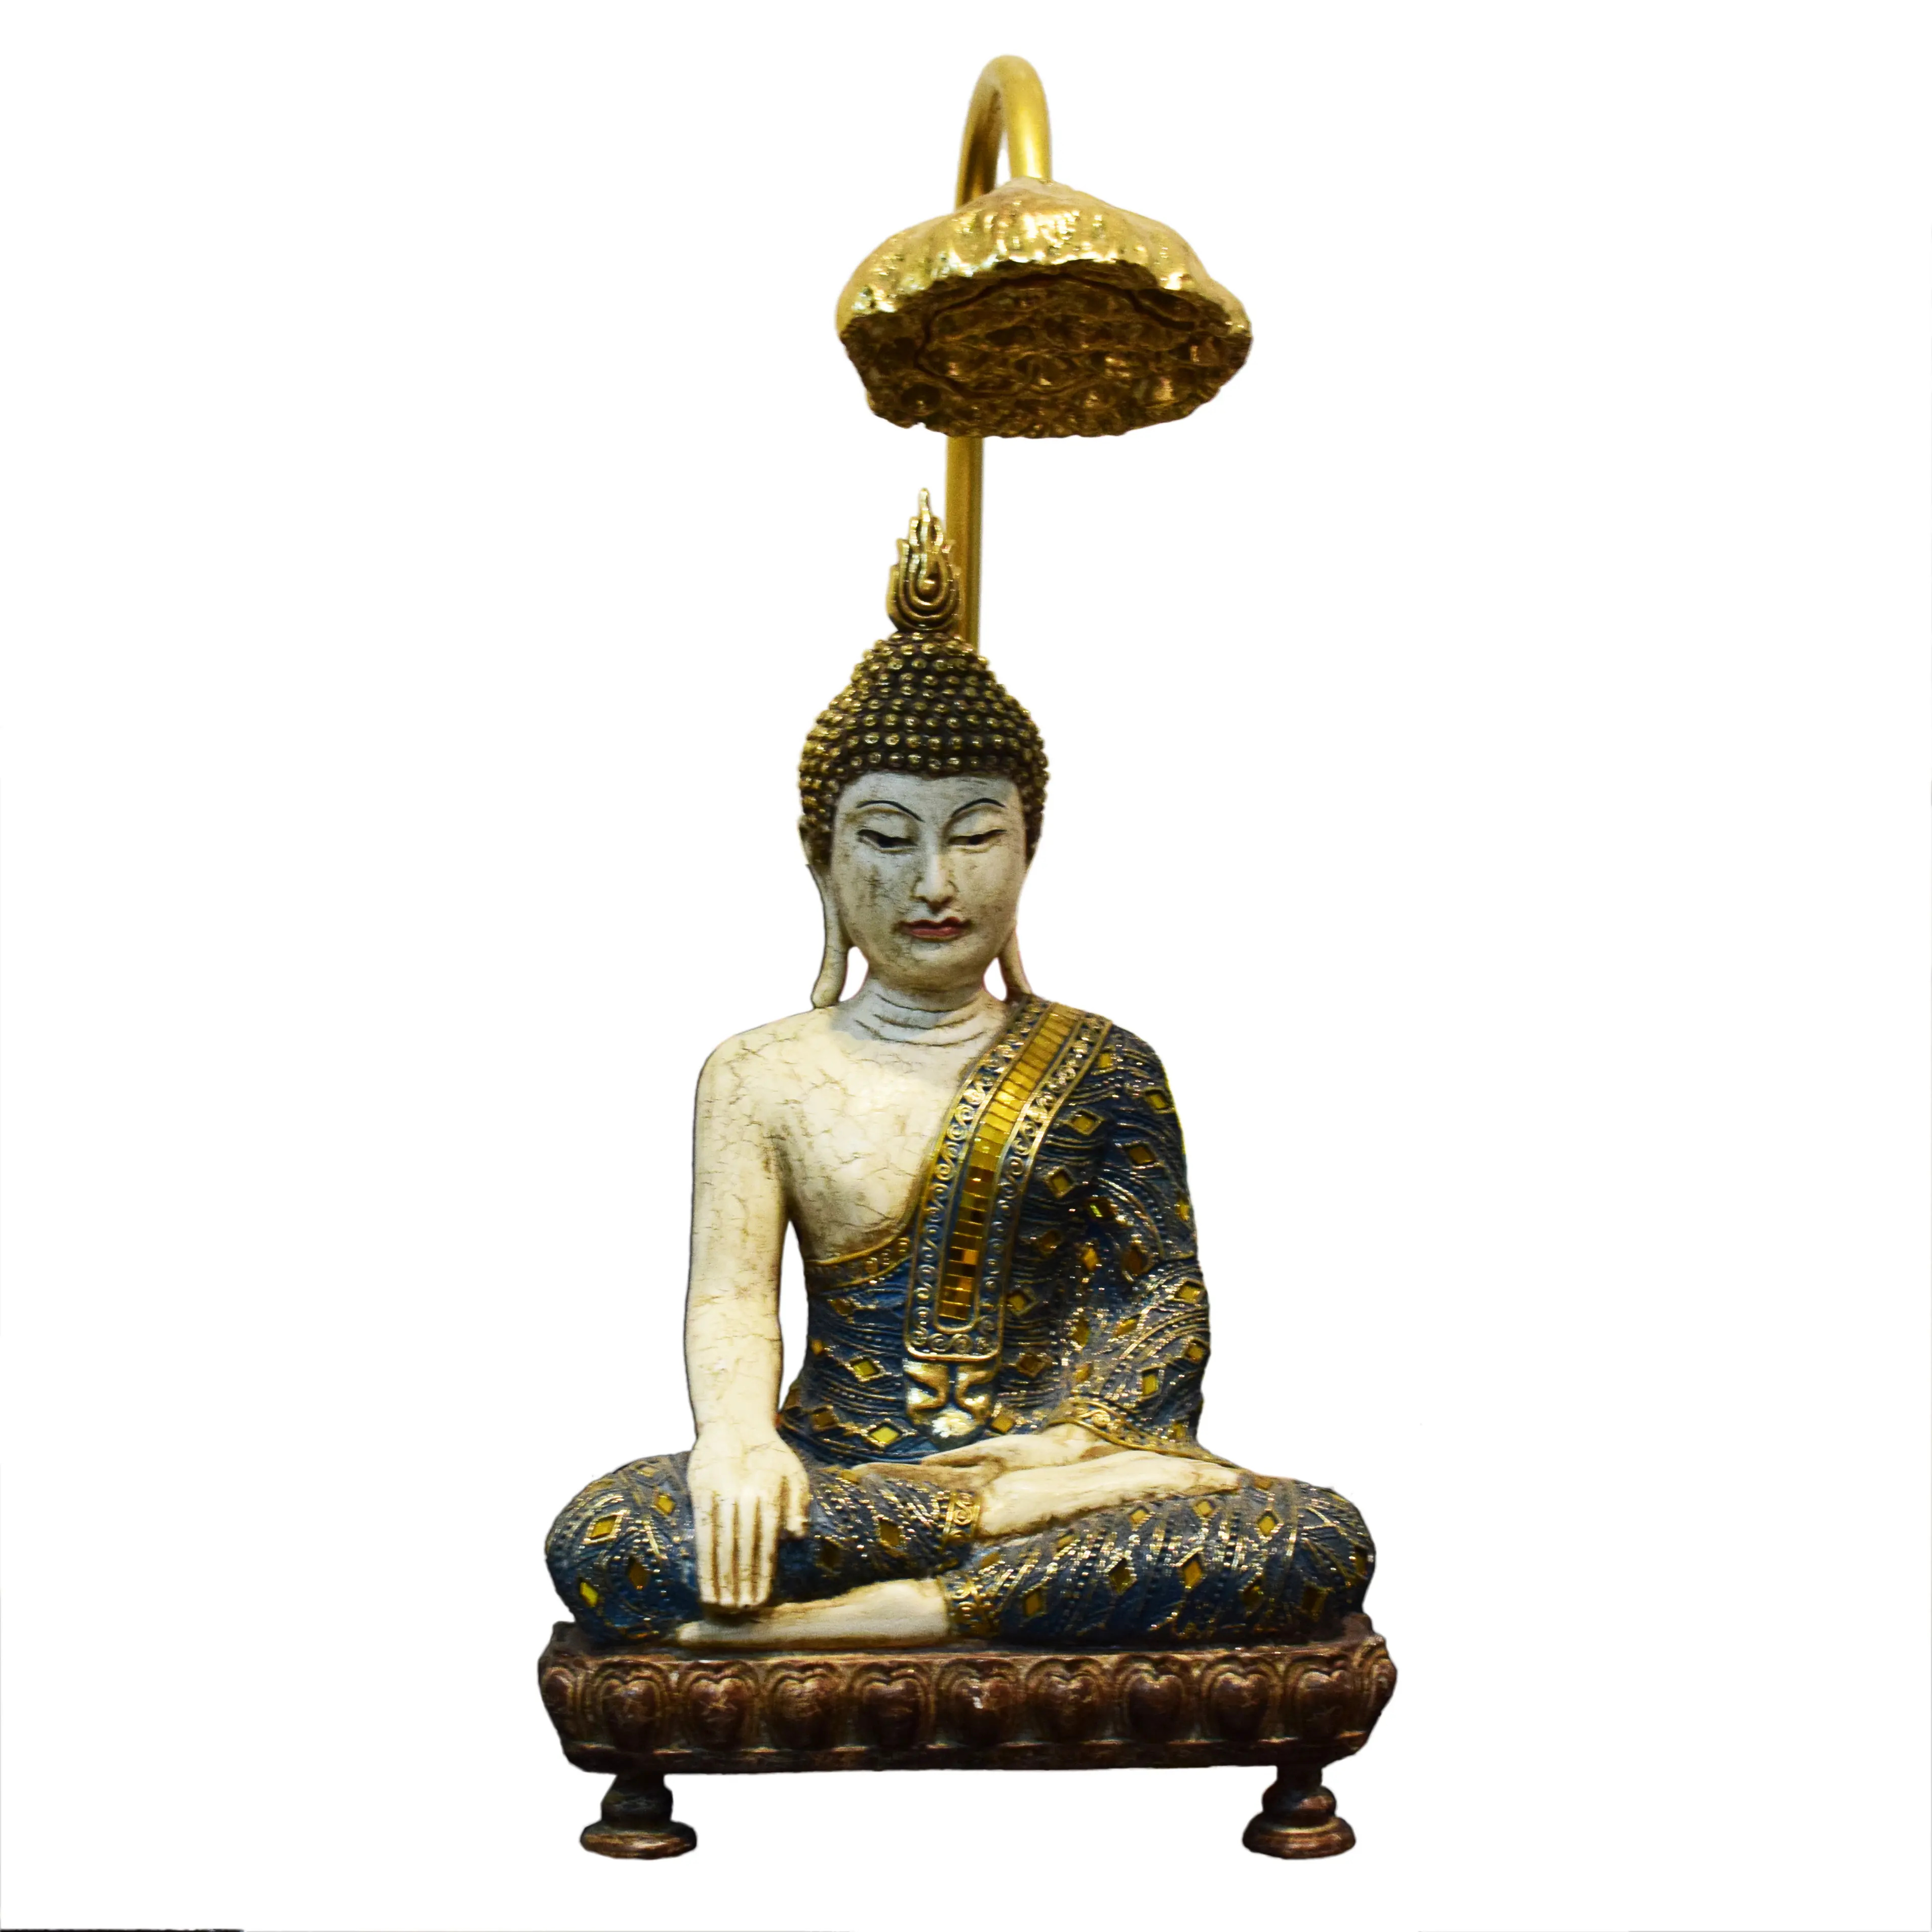 ฮินดูและเอเชียตะวันออกตกแต่งงานฝีมือทางศาสนานั่งพระพุทธรูปรูปปั้นด้วยโคมไฟดอกบัว